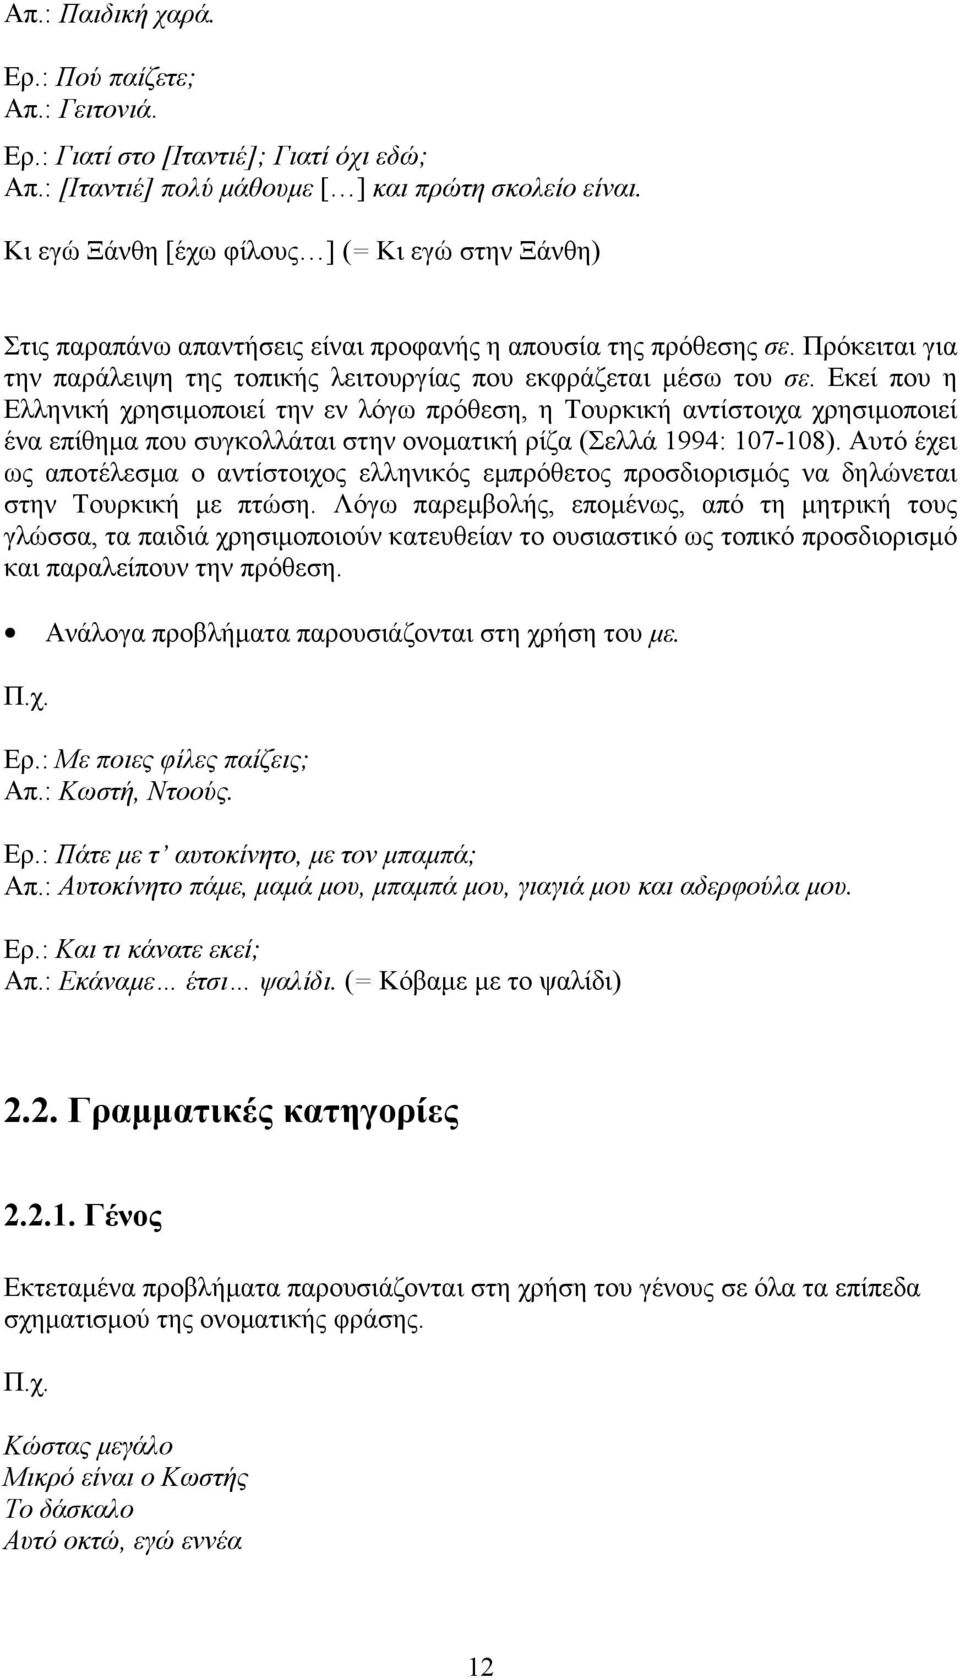 Εκεί που η Ελληνική χρησιμοποιεί την εν λόγω πρόθεση, η Τουρκική αντίστοιχα χρησιμοποιεί ένα επίθημα που συγκολλάται στην ονοματική ρίζα (Σελλά 1994: 107-108).